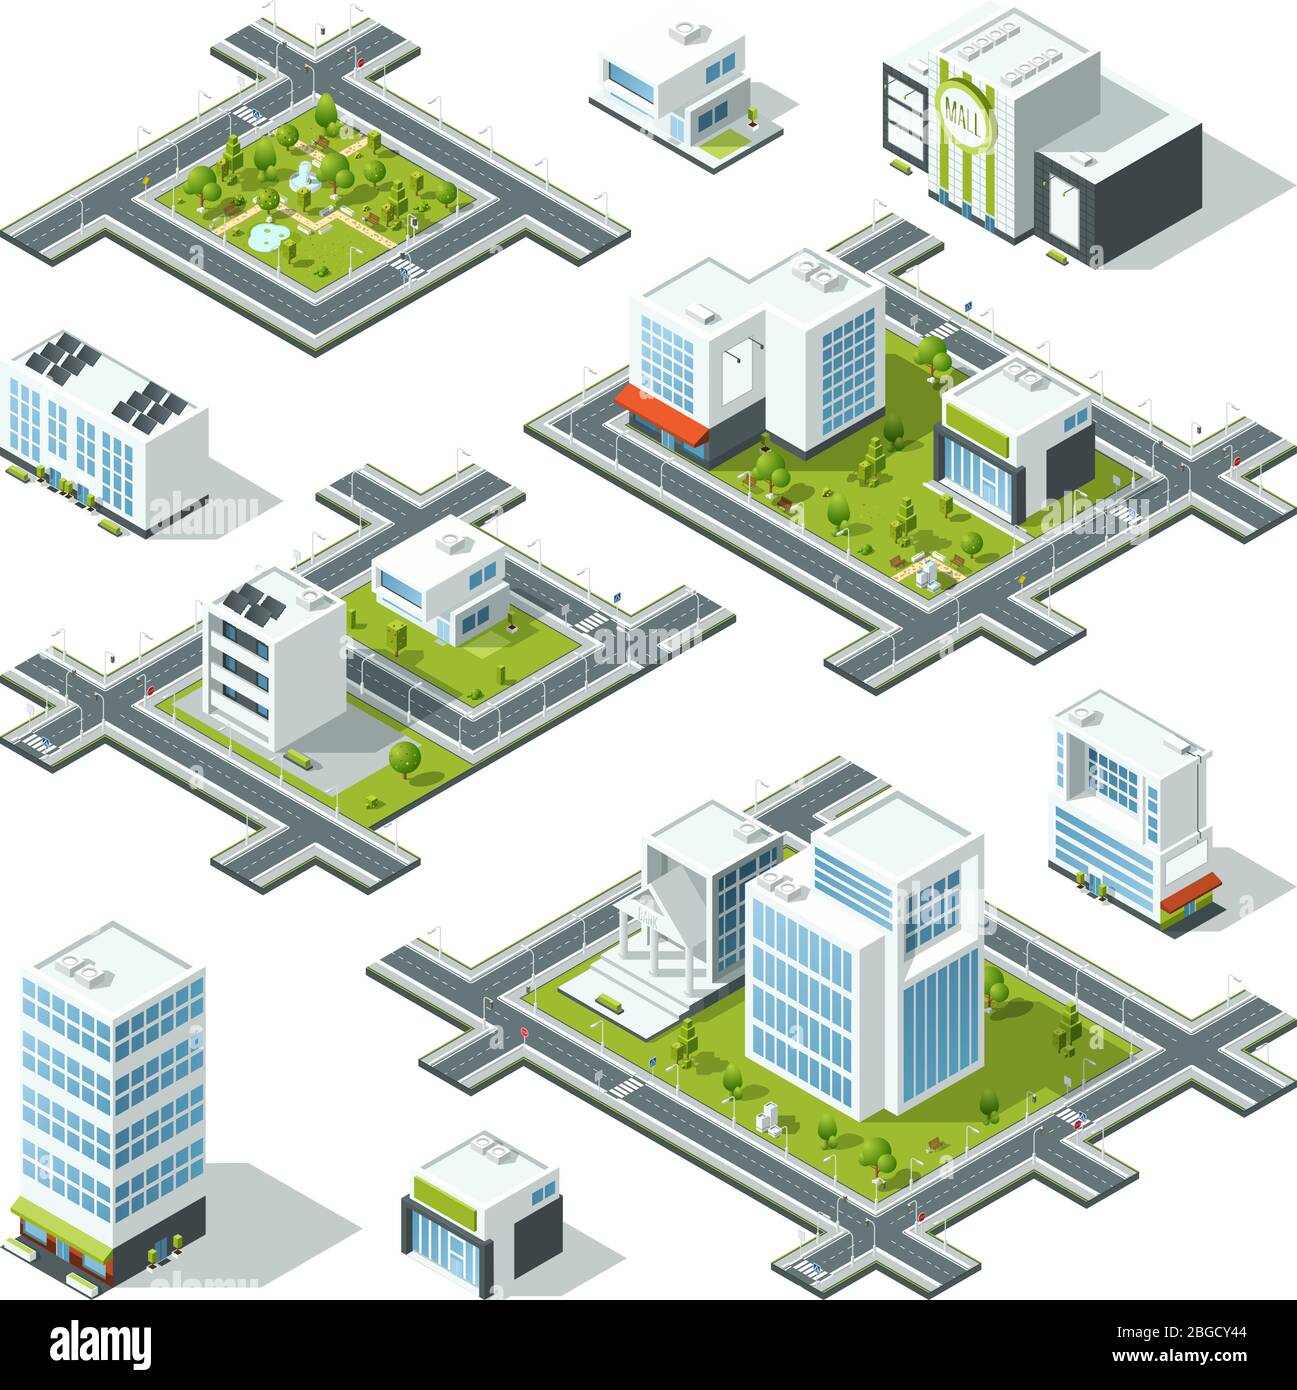 Illustration vectorielle isométrique en 3 dimensions avec immeubles de bureaux, gratte-ciel. Arbres et buissons dans la rue Illustration de Vecteur